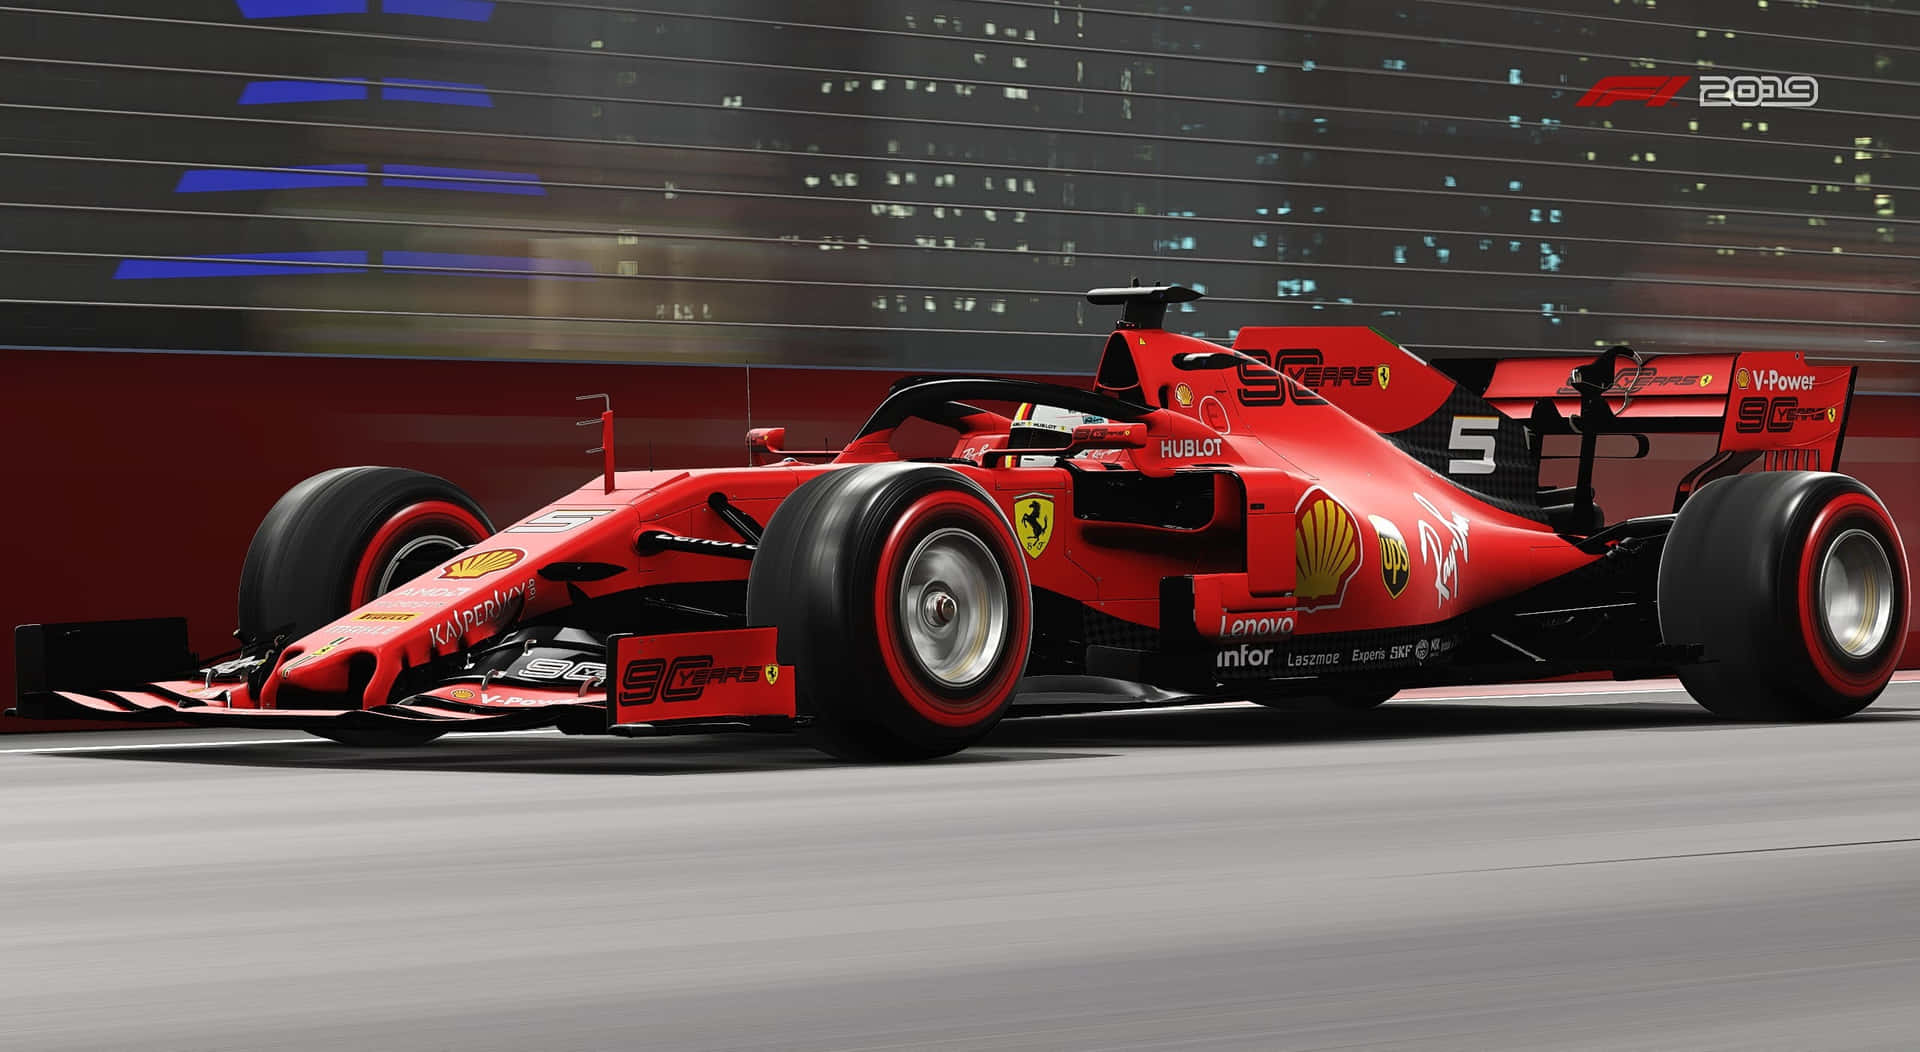 Ferrari F1 2019 Drivers Showcase Their Speed Wallpaper